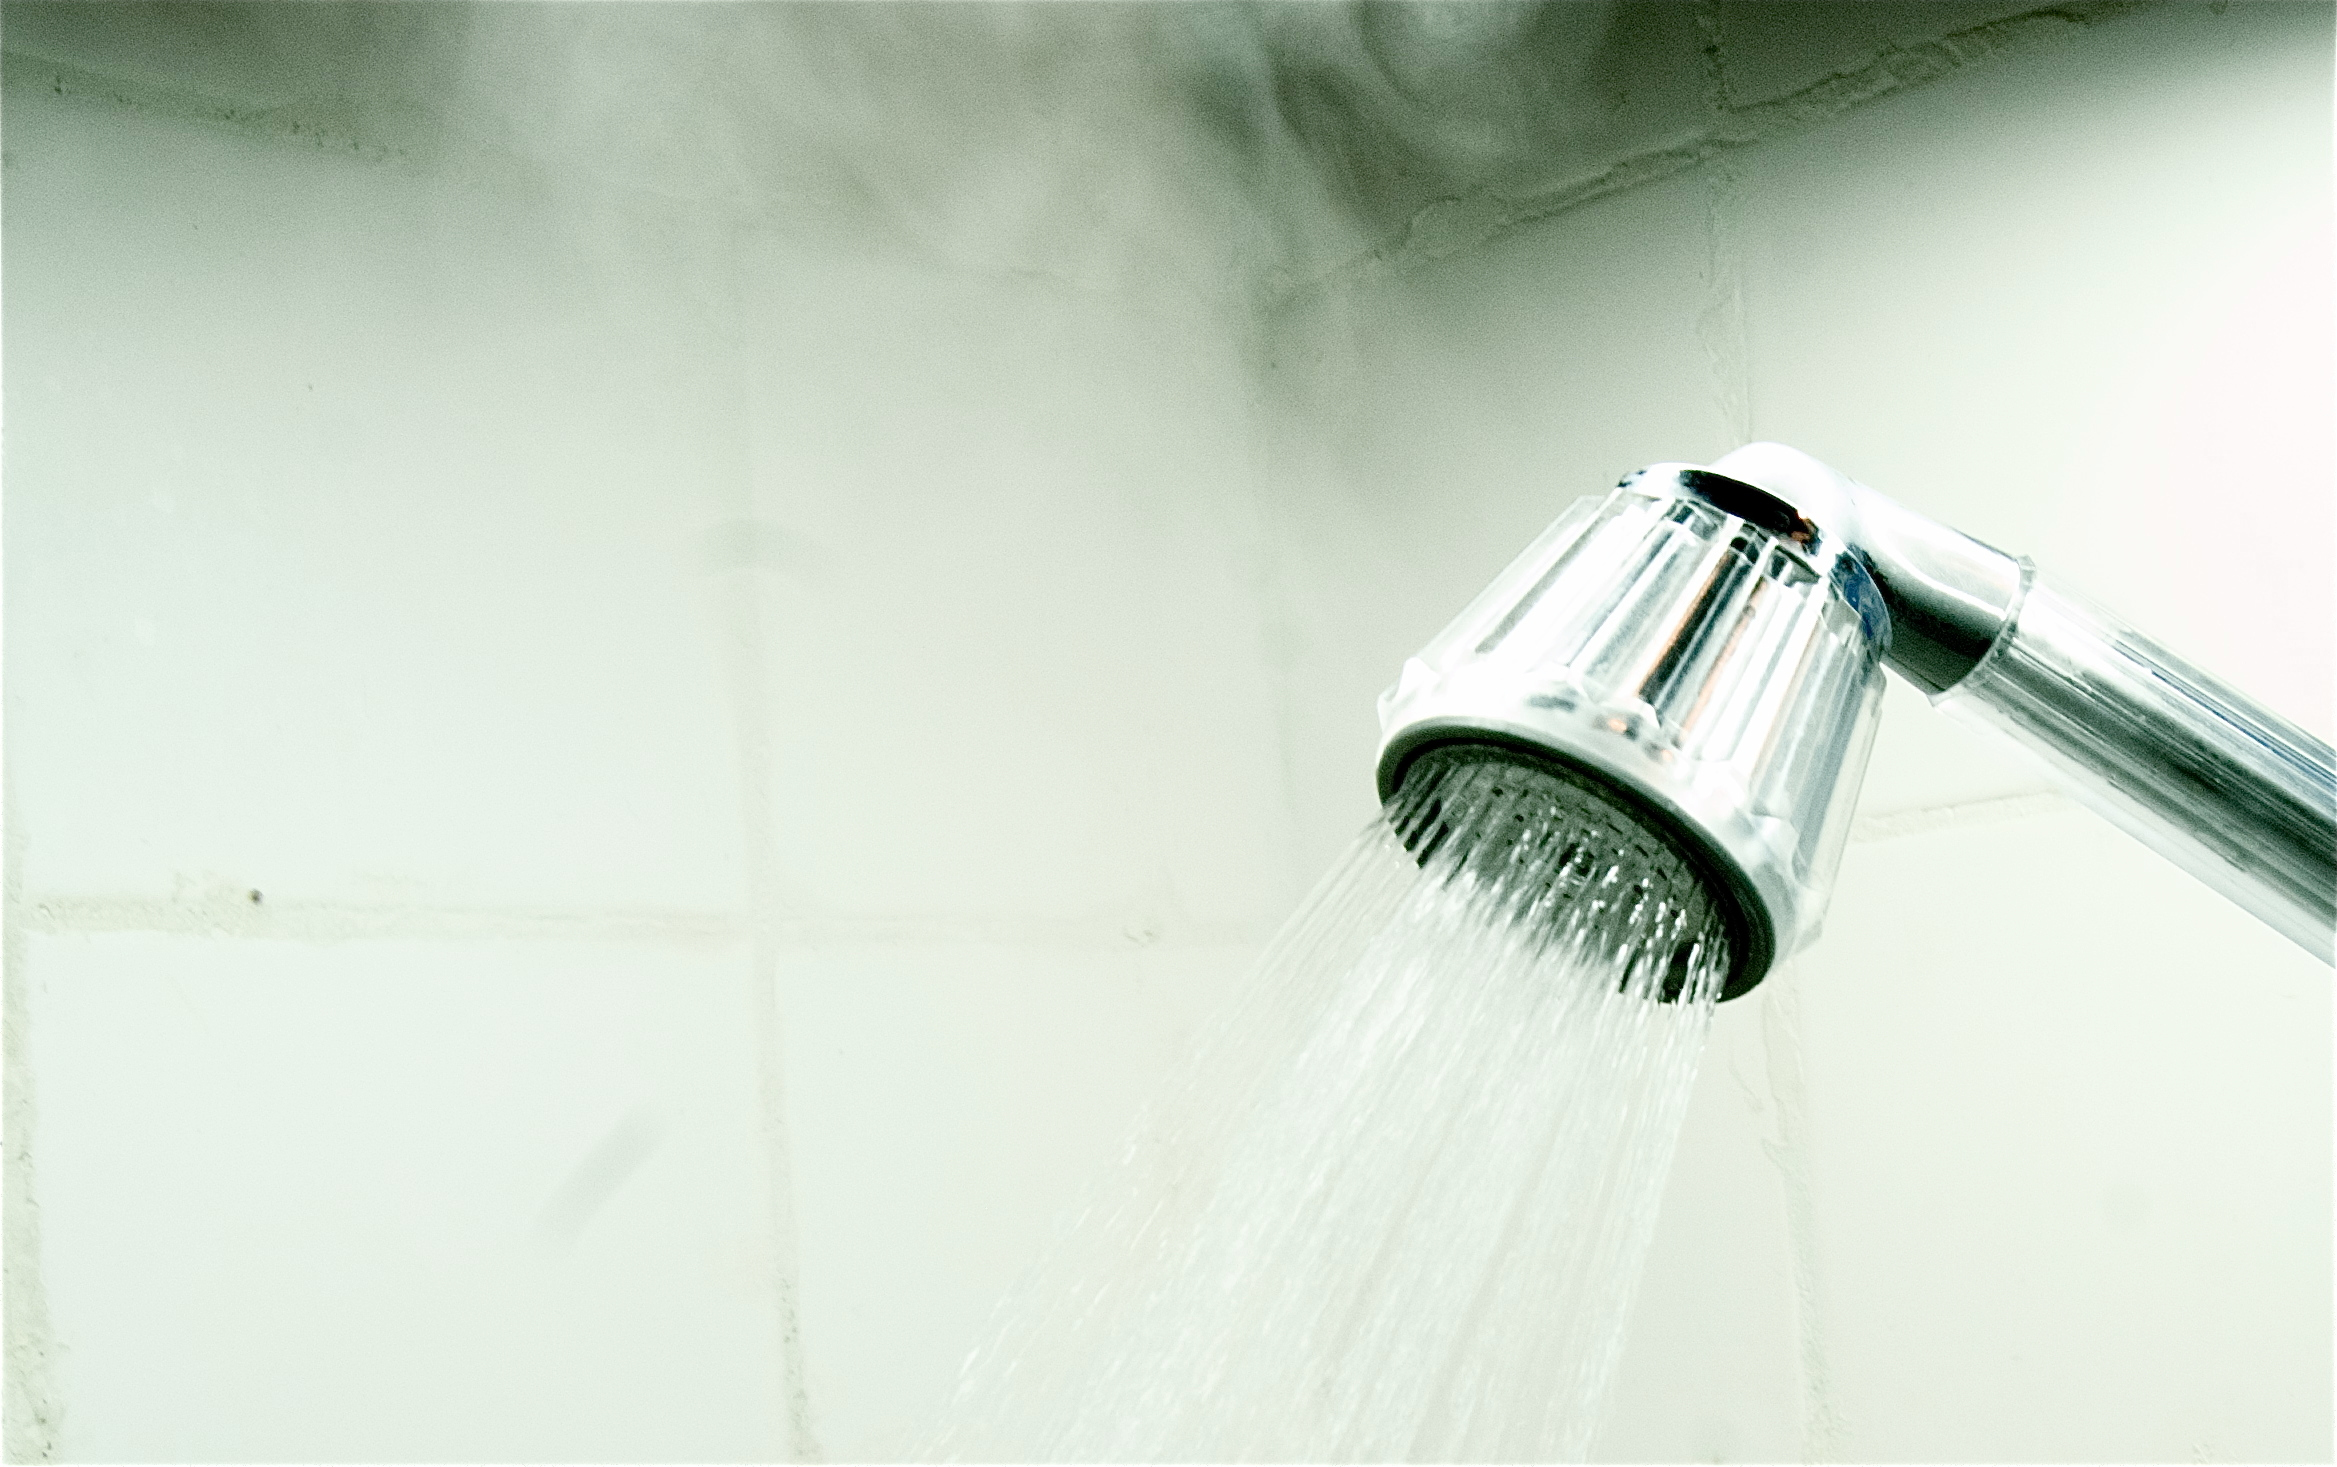 Meleg vagy hideg vízben jobb zuhanyozni? Itt a válasz! | EgészségKalauz